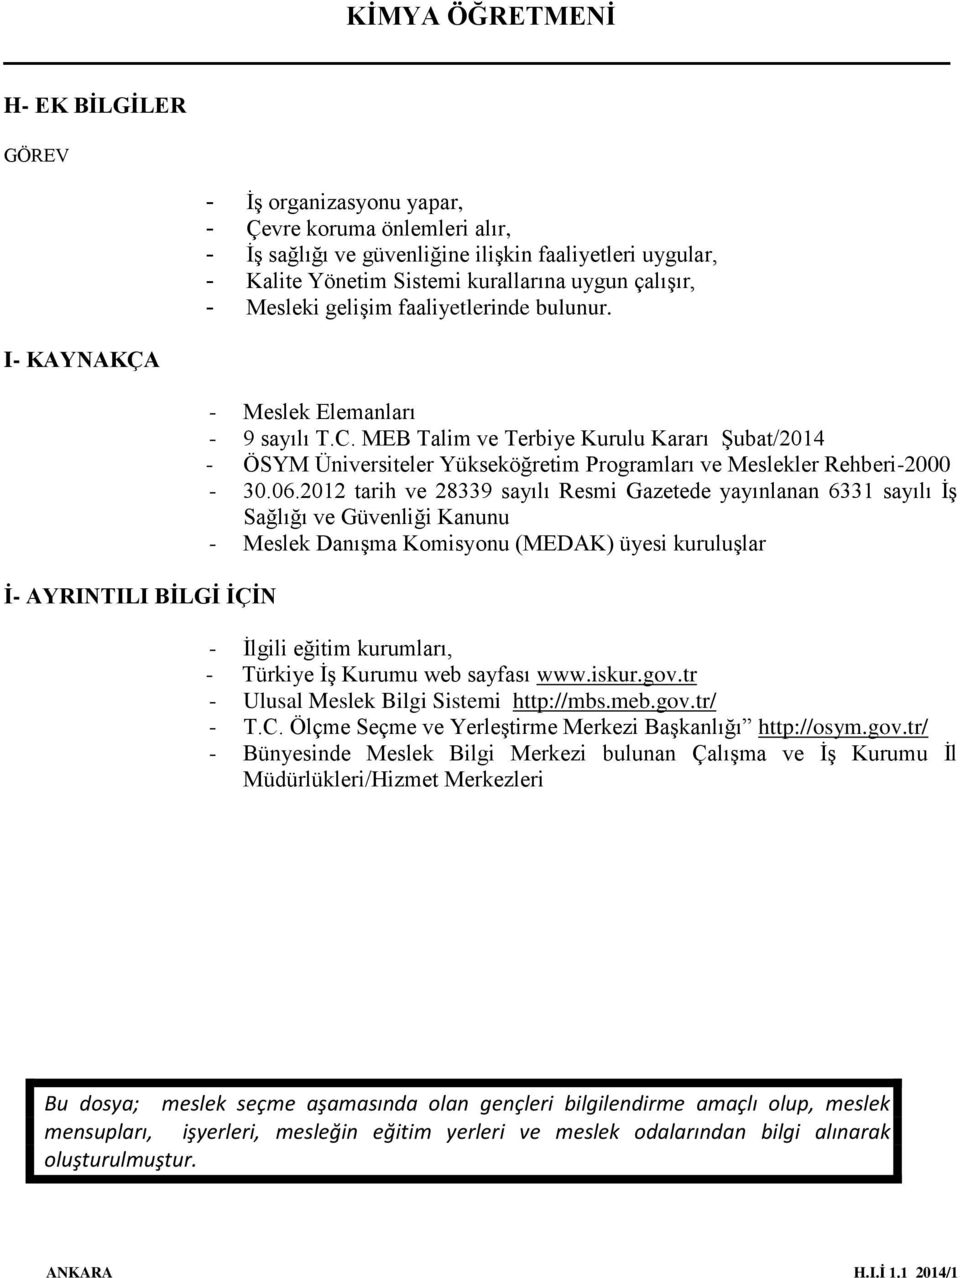 MEB Talim ve Terbiye Kurulu Kararı Şubat/2014 - ÖSYM Üniversiteler Yükseköğretim Programları ve Meslekler Rehberi-2000-30.06.